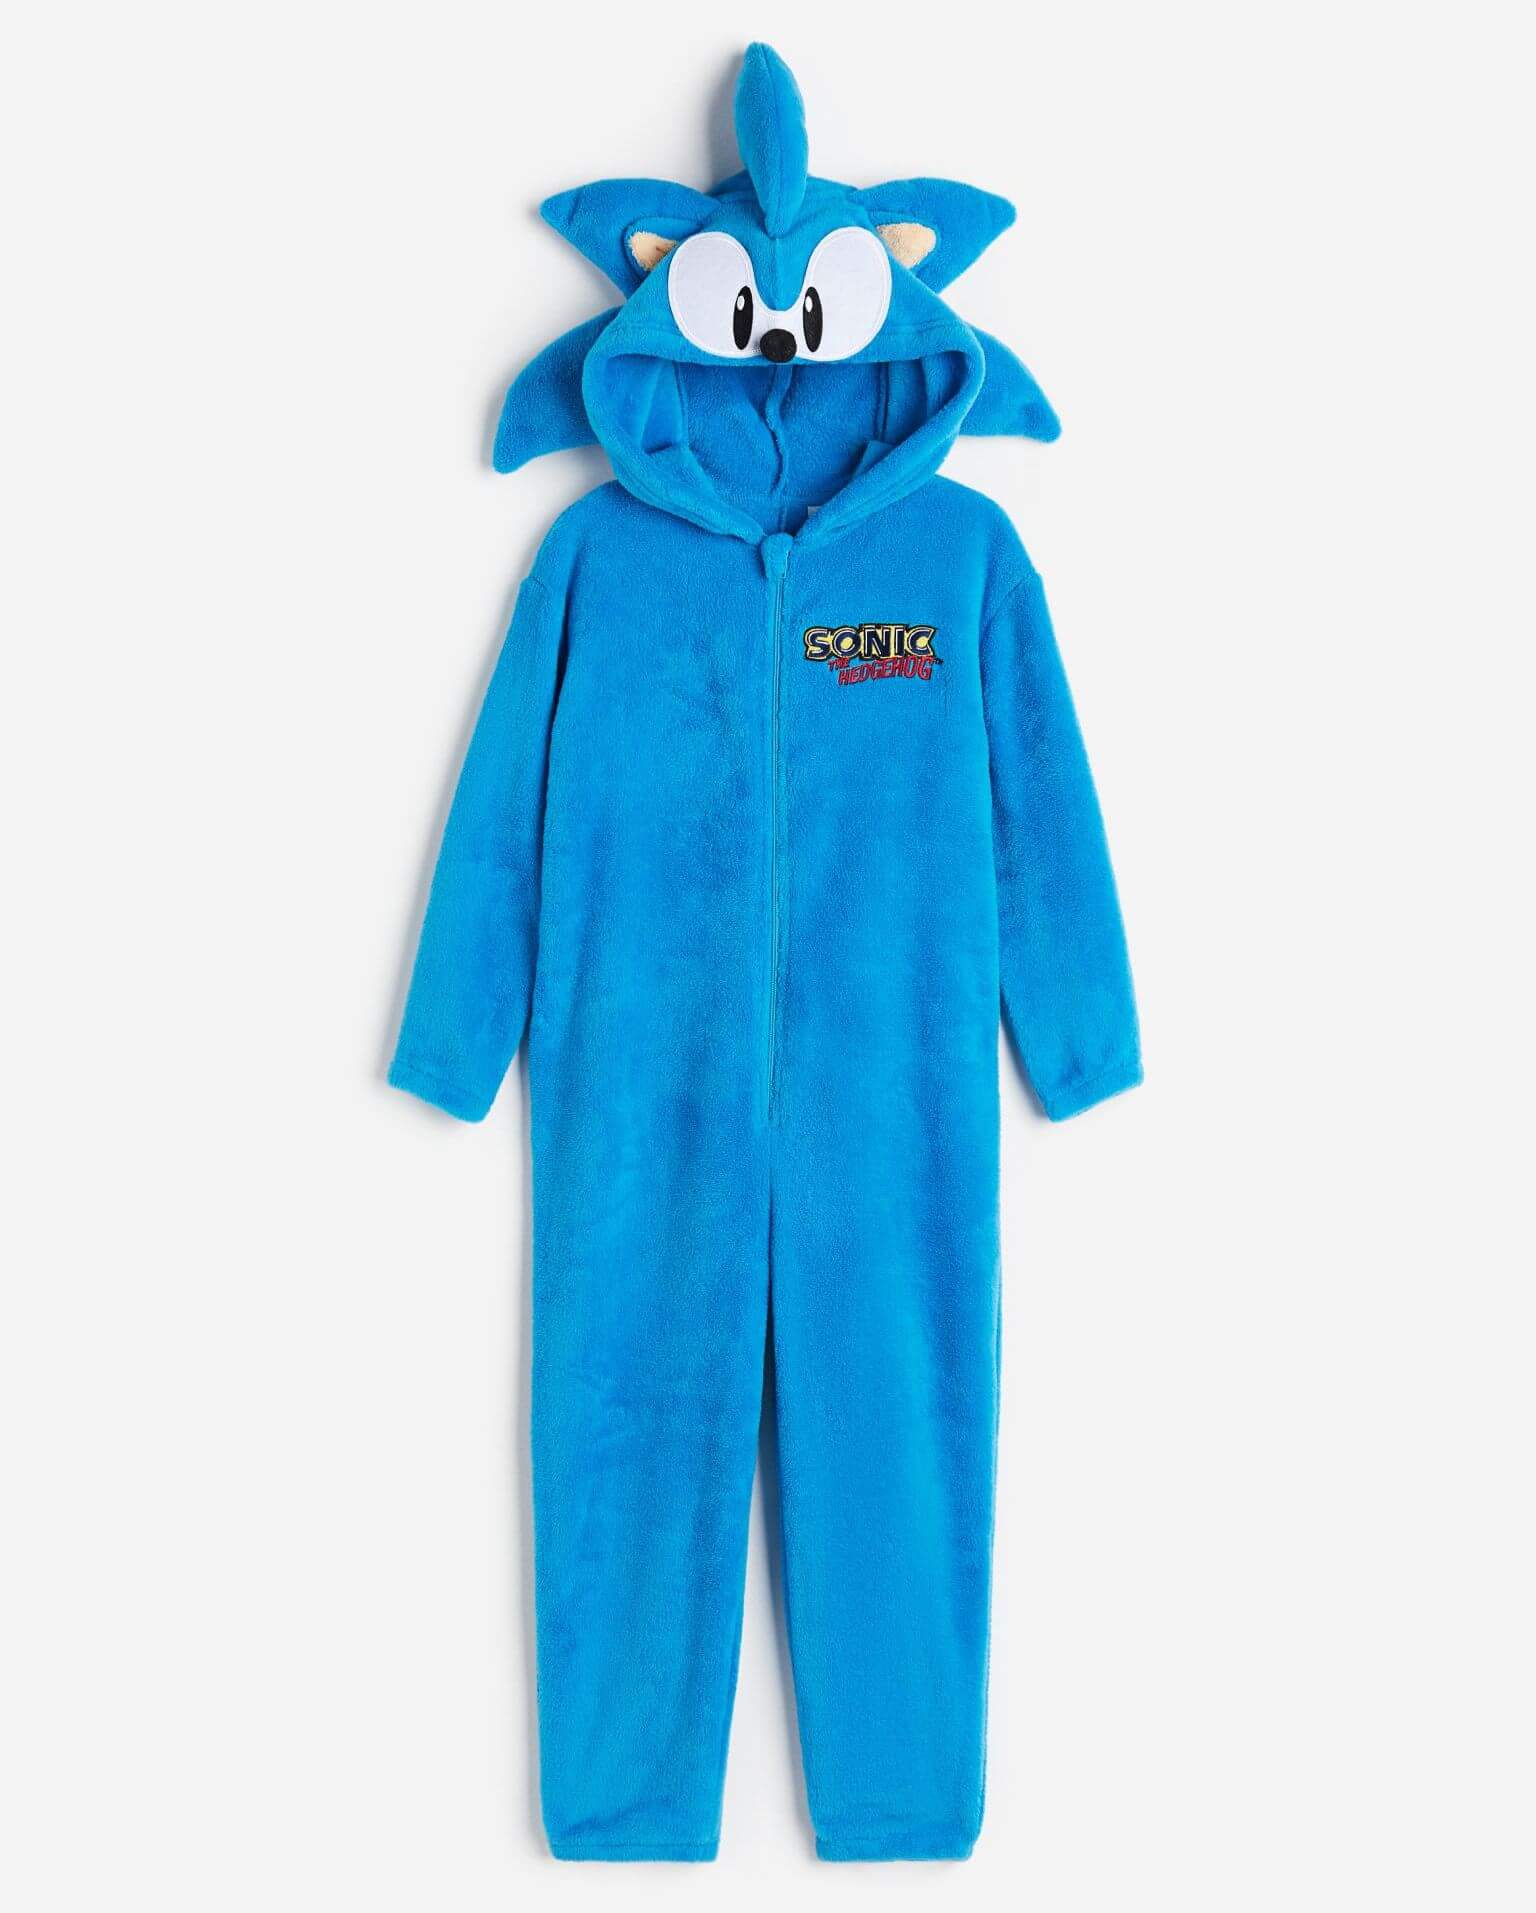 Комбинезон H&M Sonic The Hedgehog, голубой